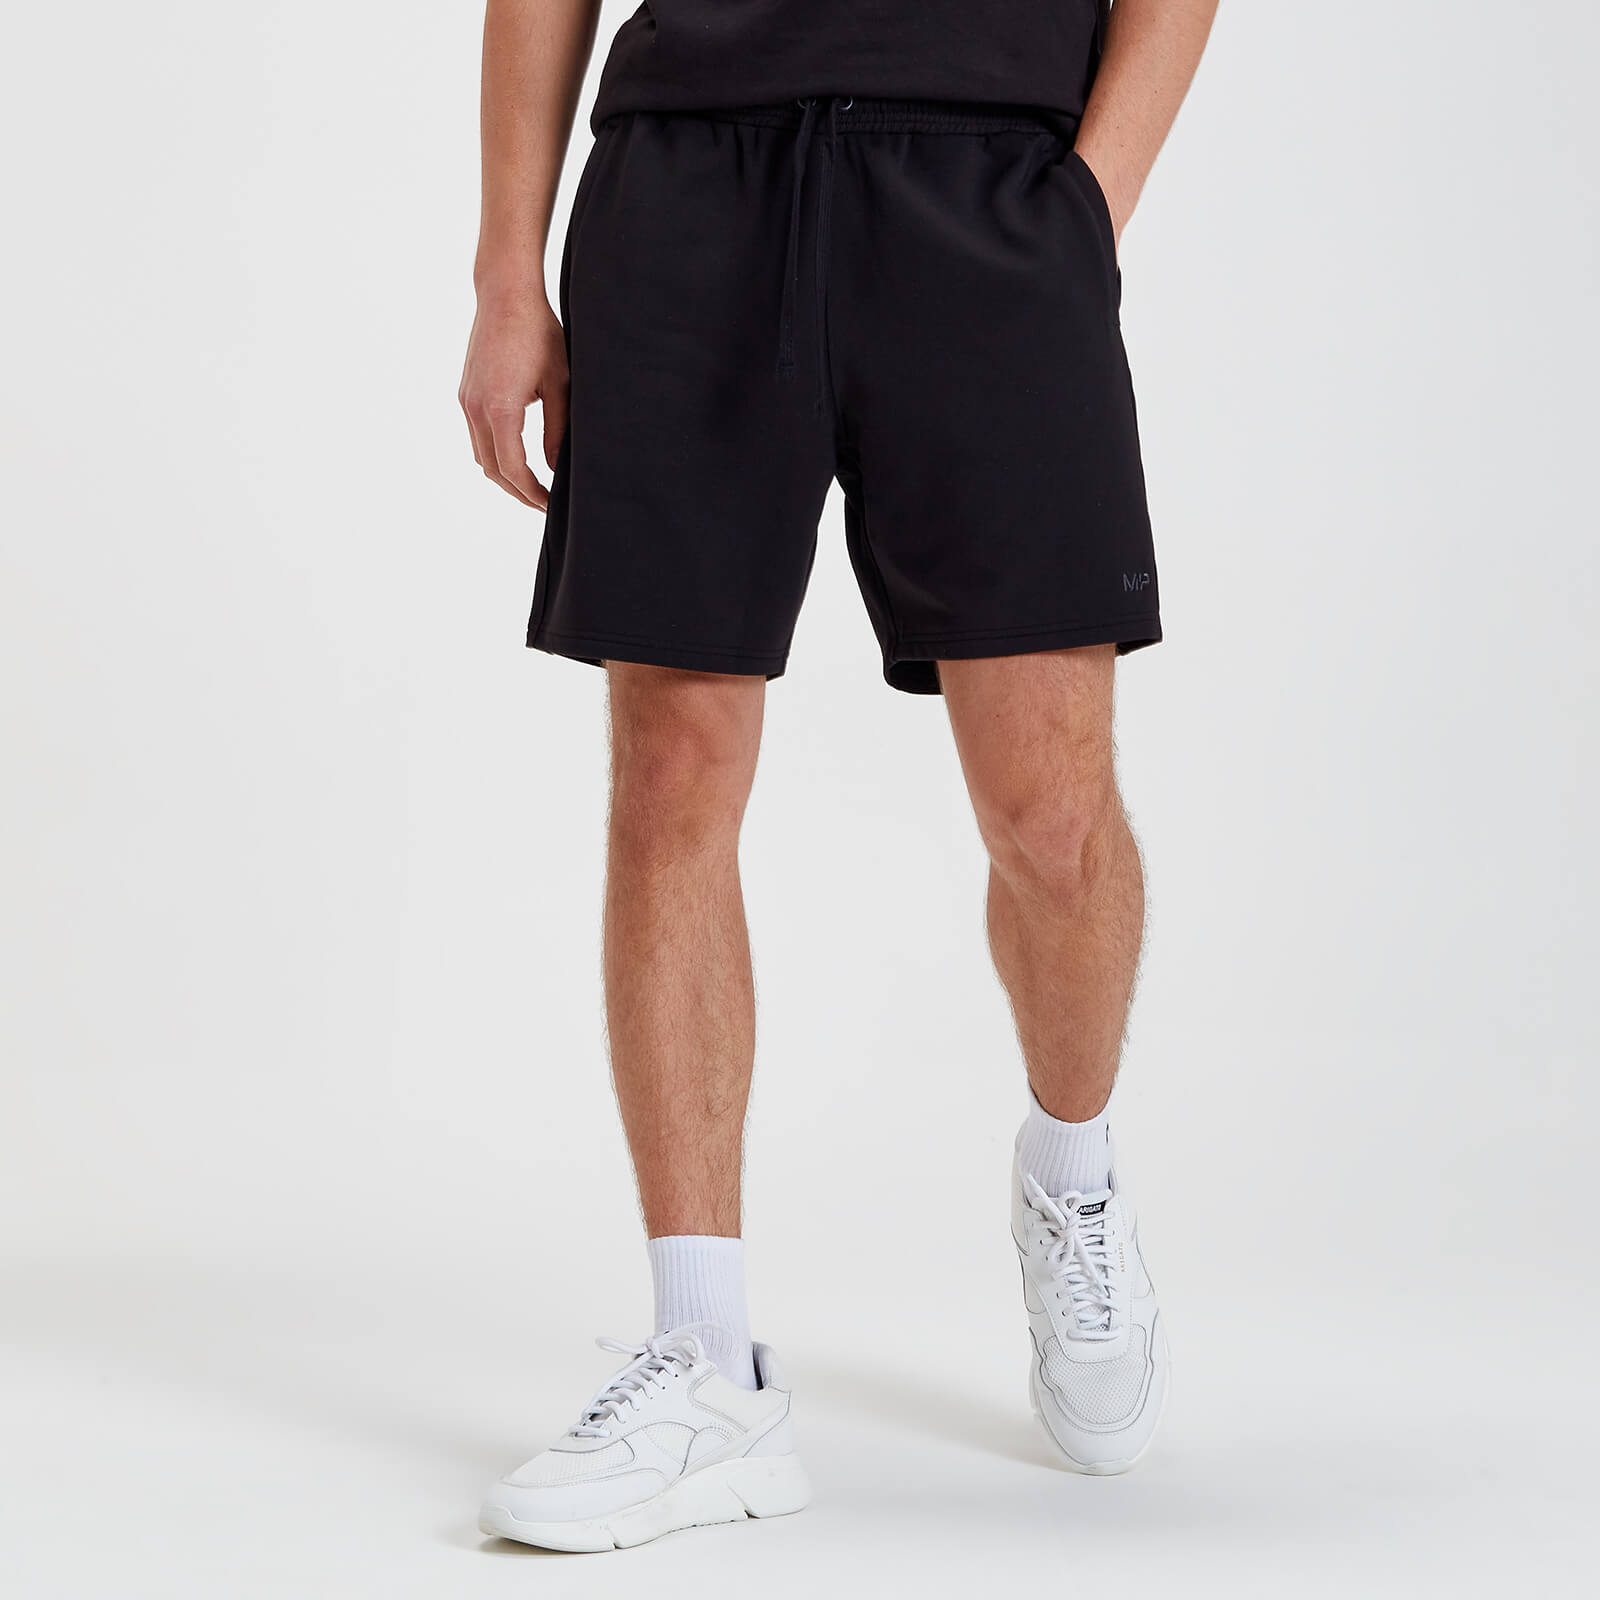 Pantalones cortos transpirables Rest Day para hombre de MP - Negro lavado - XL